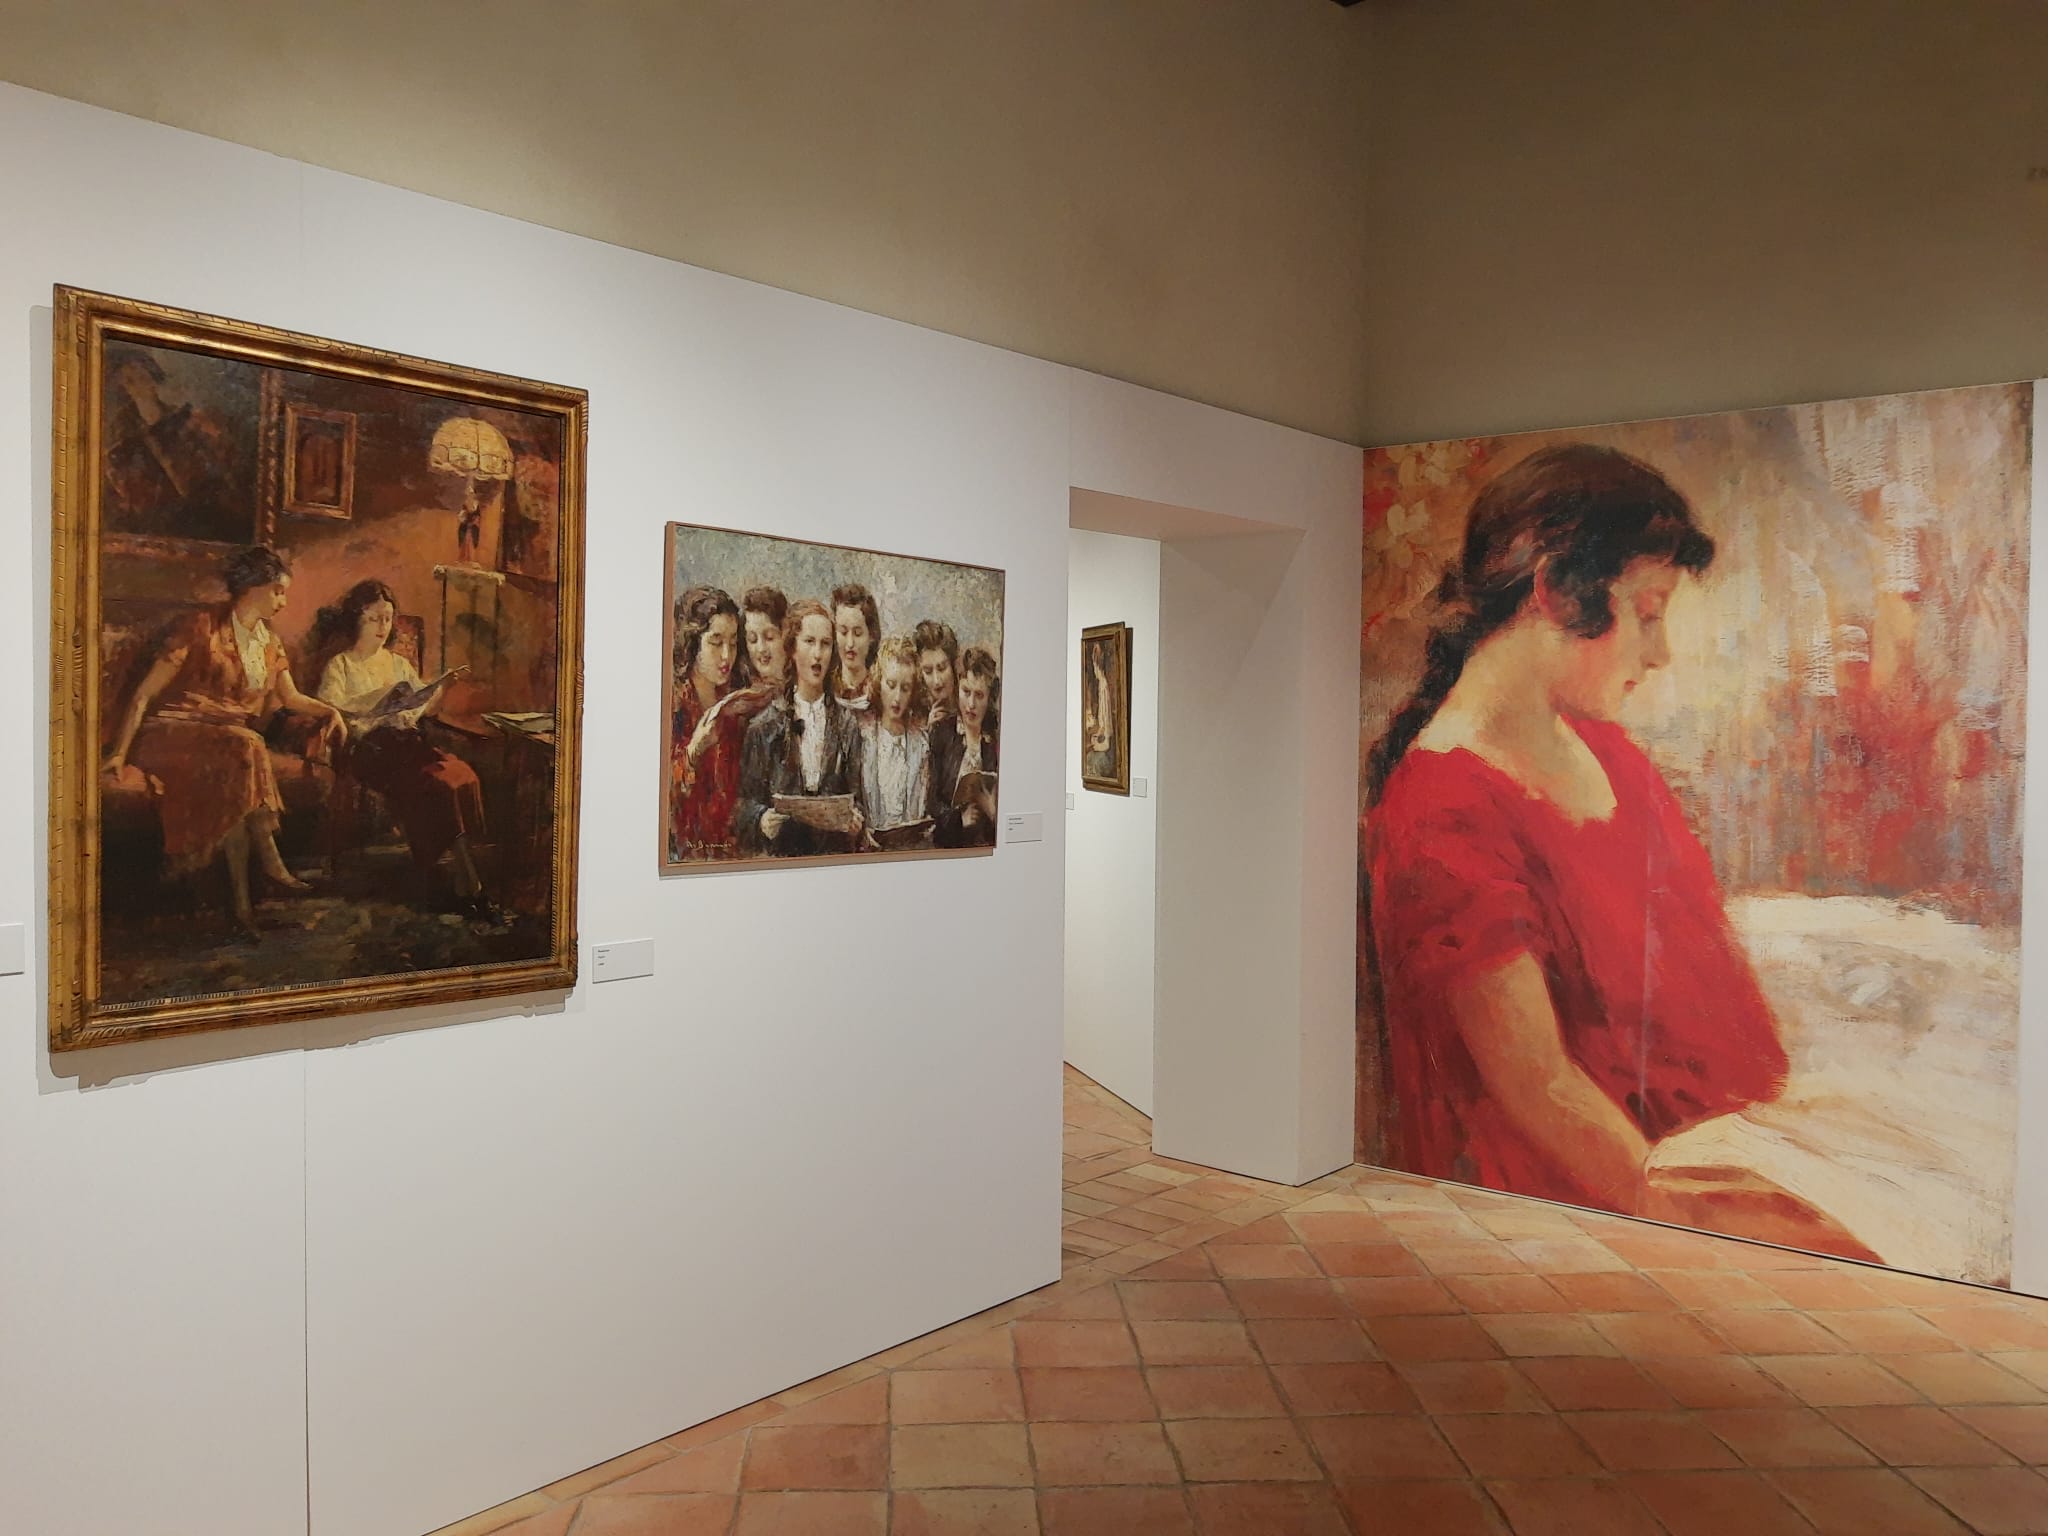 Riaprono i musei e i luoghi della cultura. Per due settimane ingresso gratuito nei musei della Basilicata e della Campania